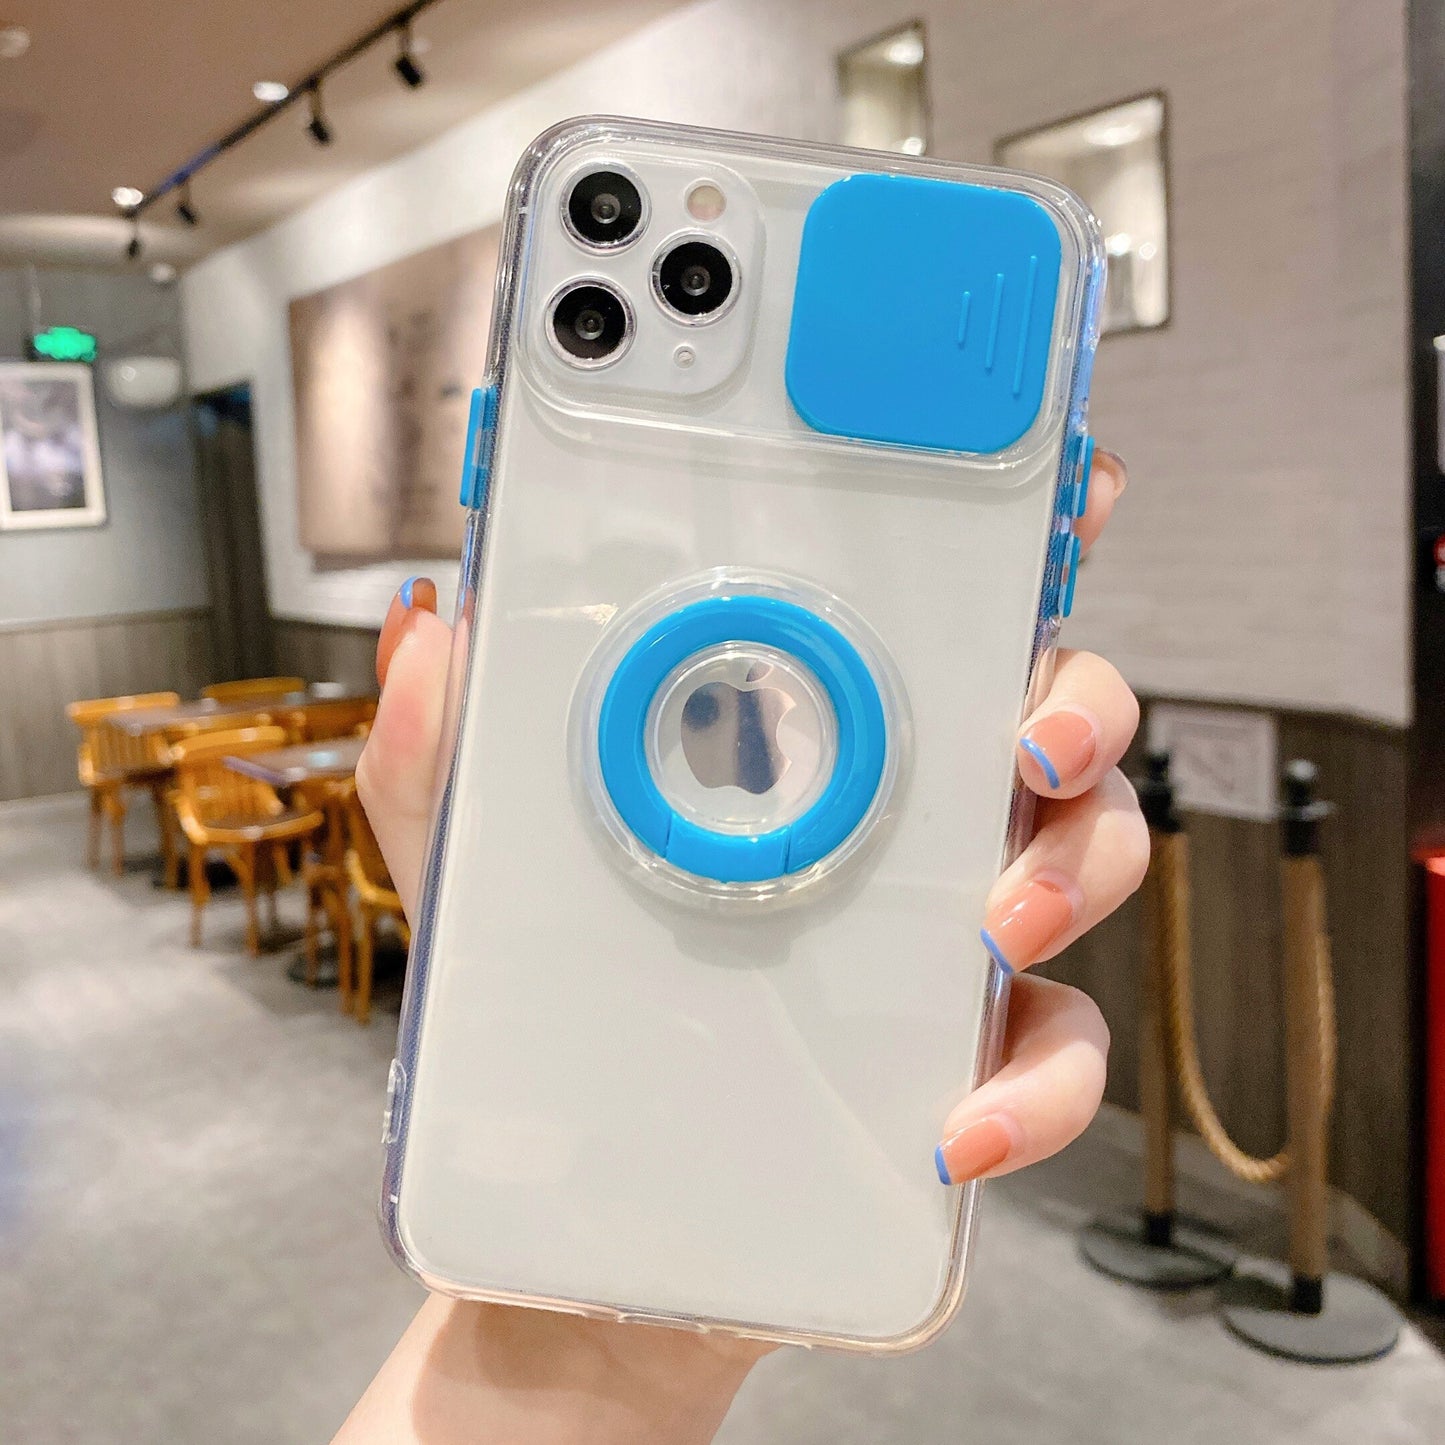 Modische iPhone Hülle mit Kameraabdeckung und Ringhalterung in blau